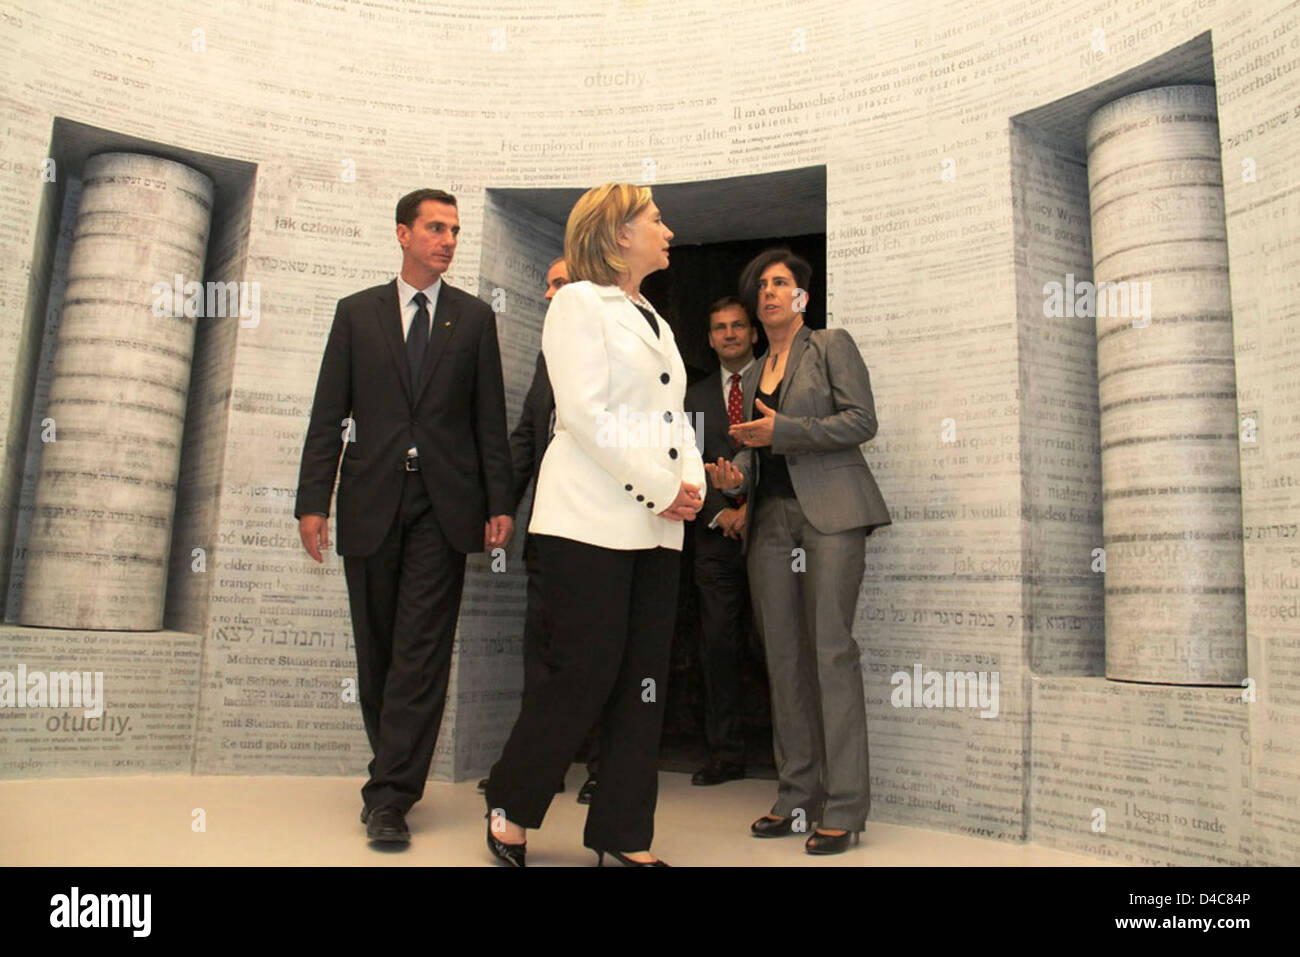 Tour Guide Gawron Explains an Exhibit to Secretary Clinton, Ambasador Feinstein, and Polish Foreign Minister Sikorski Stock Photo